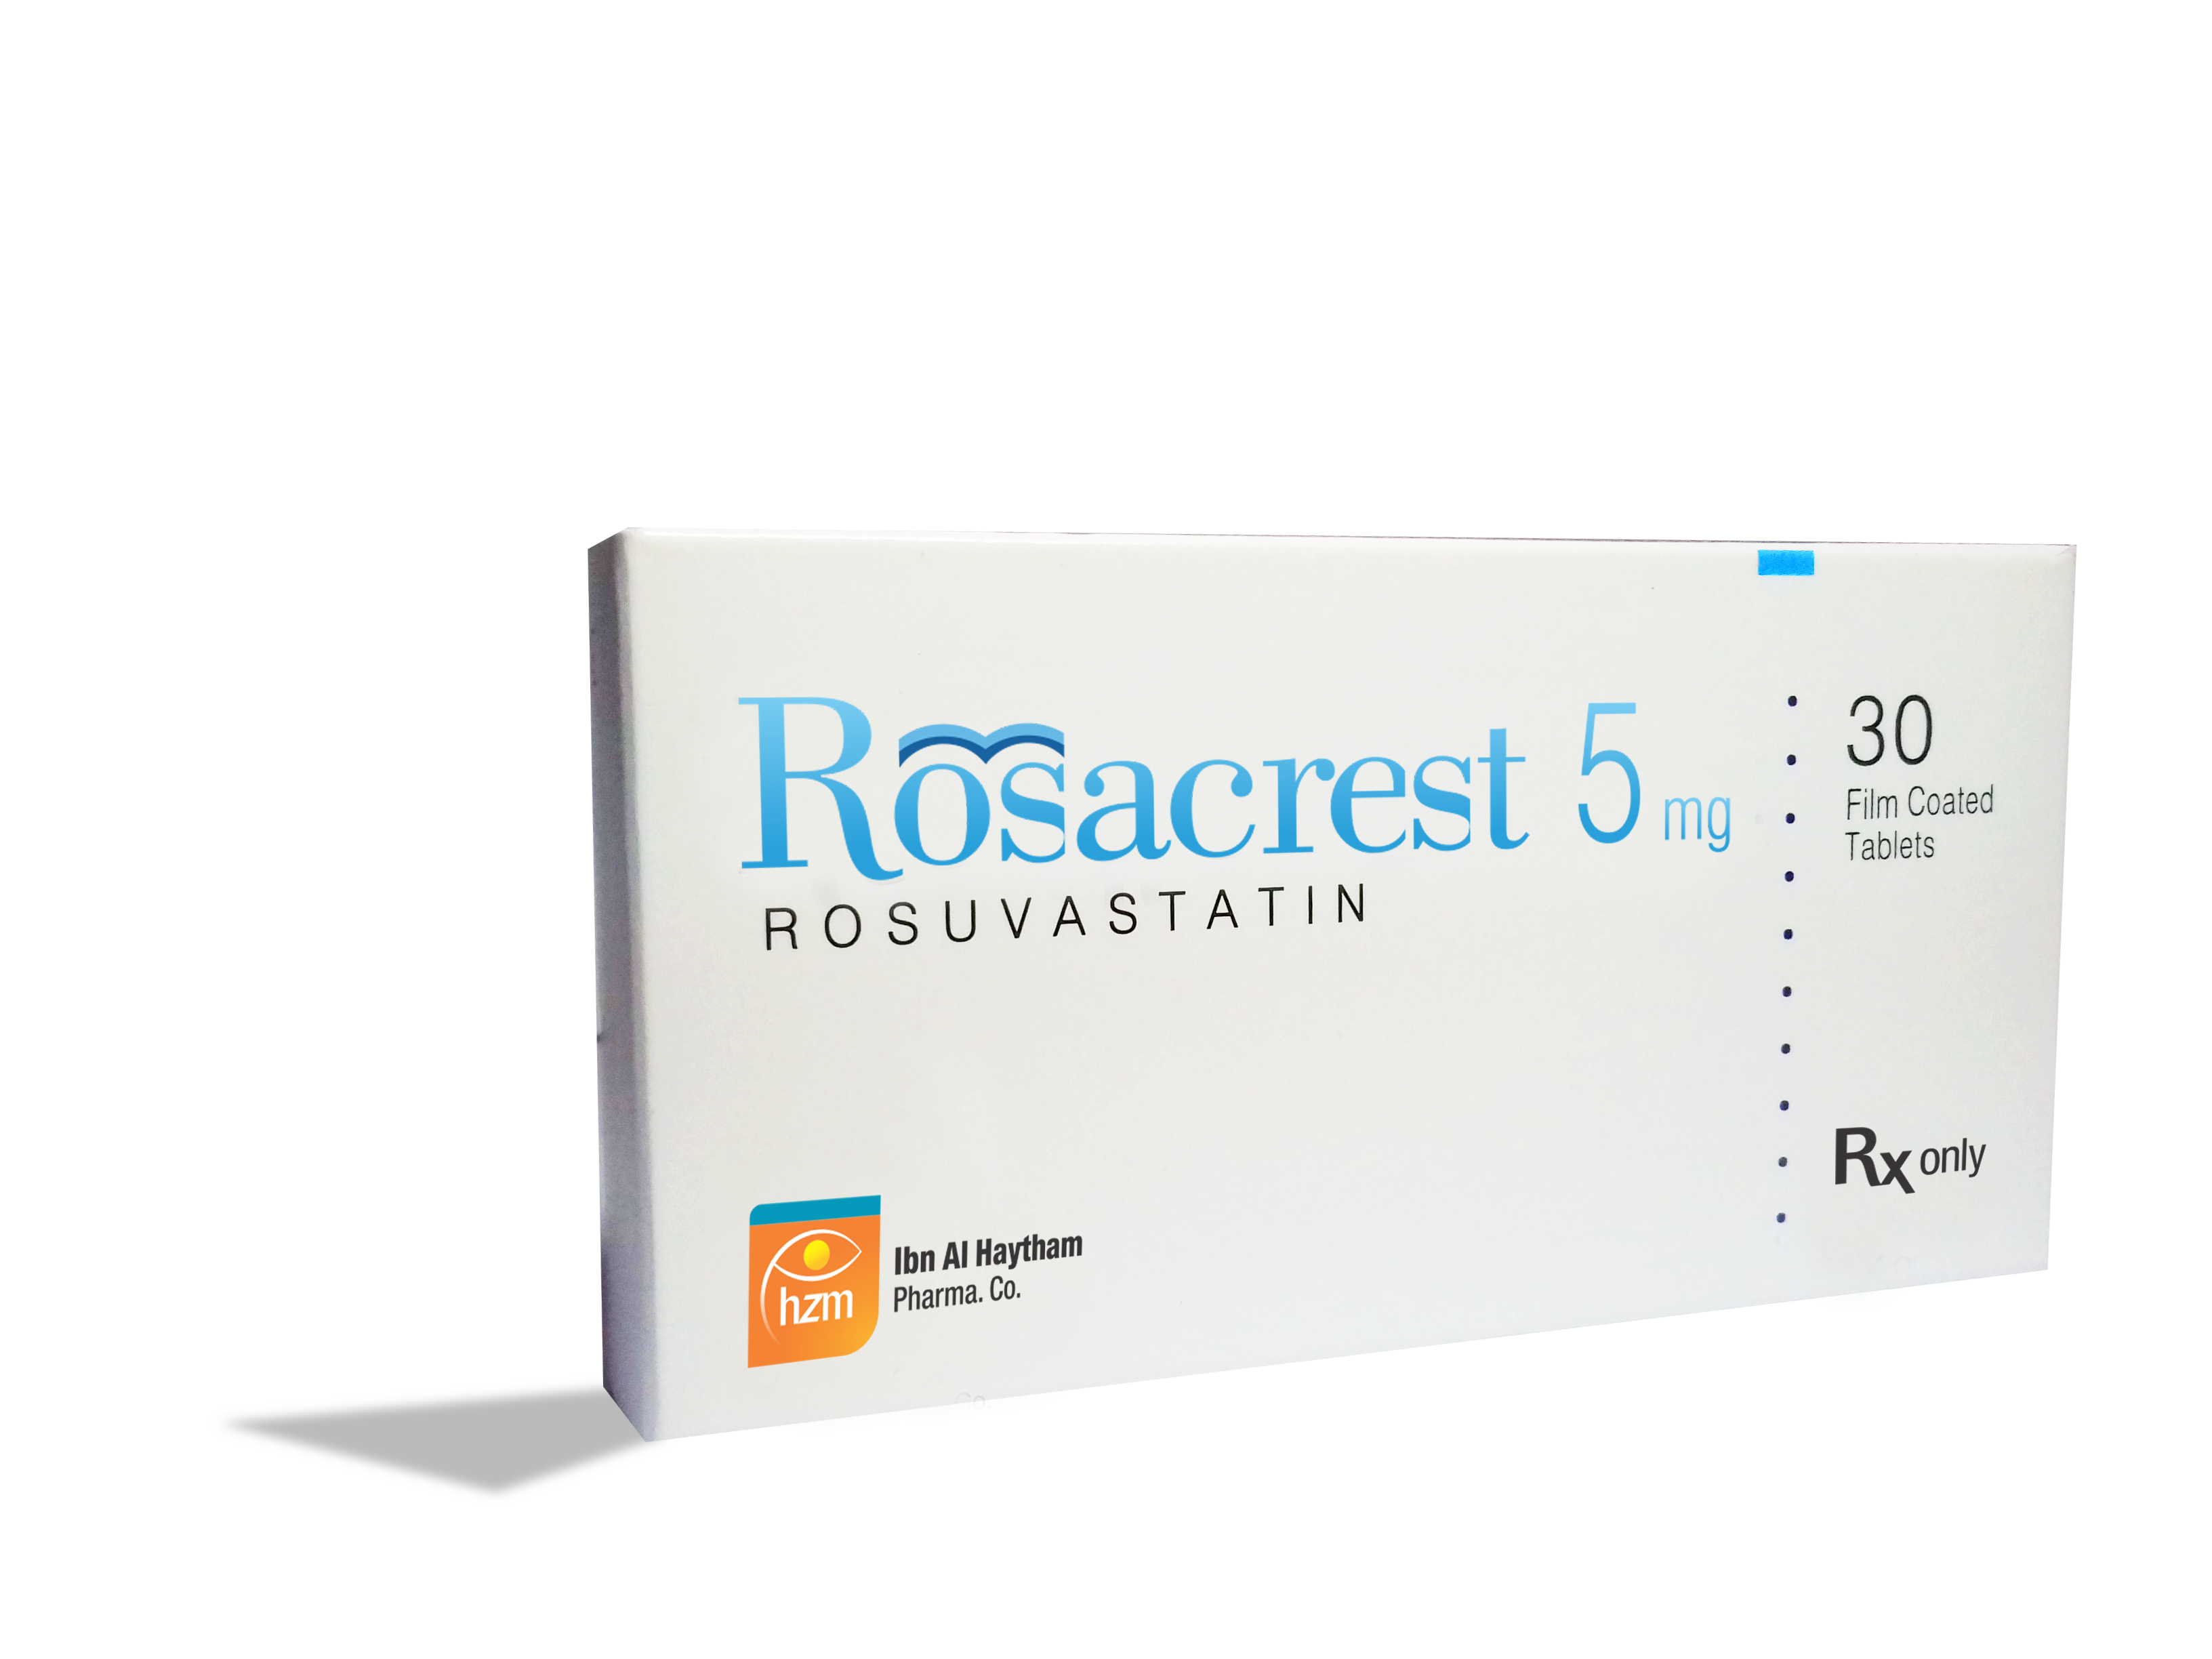 Rosacrest 5